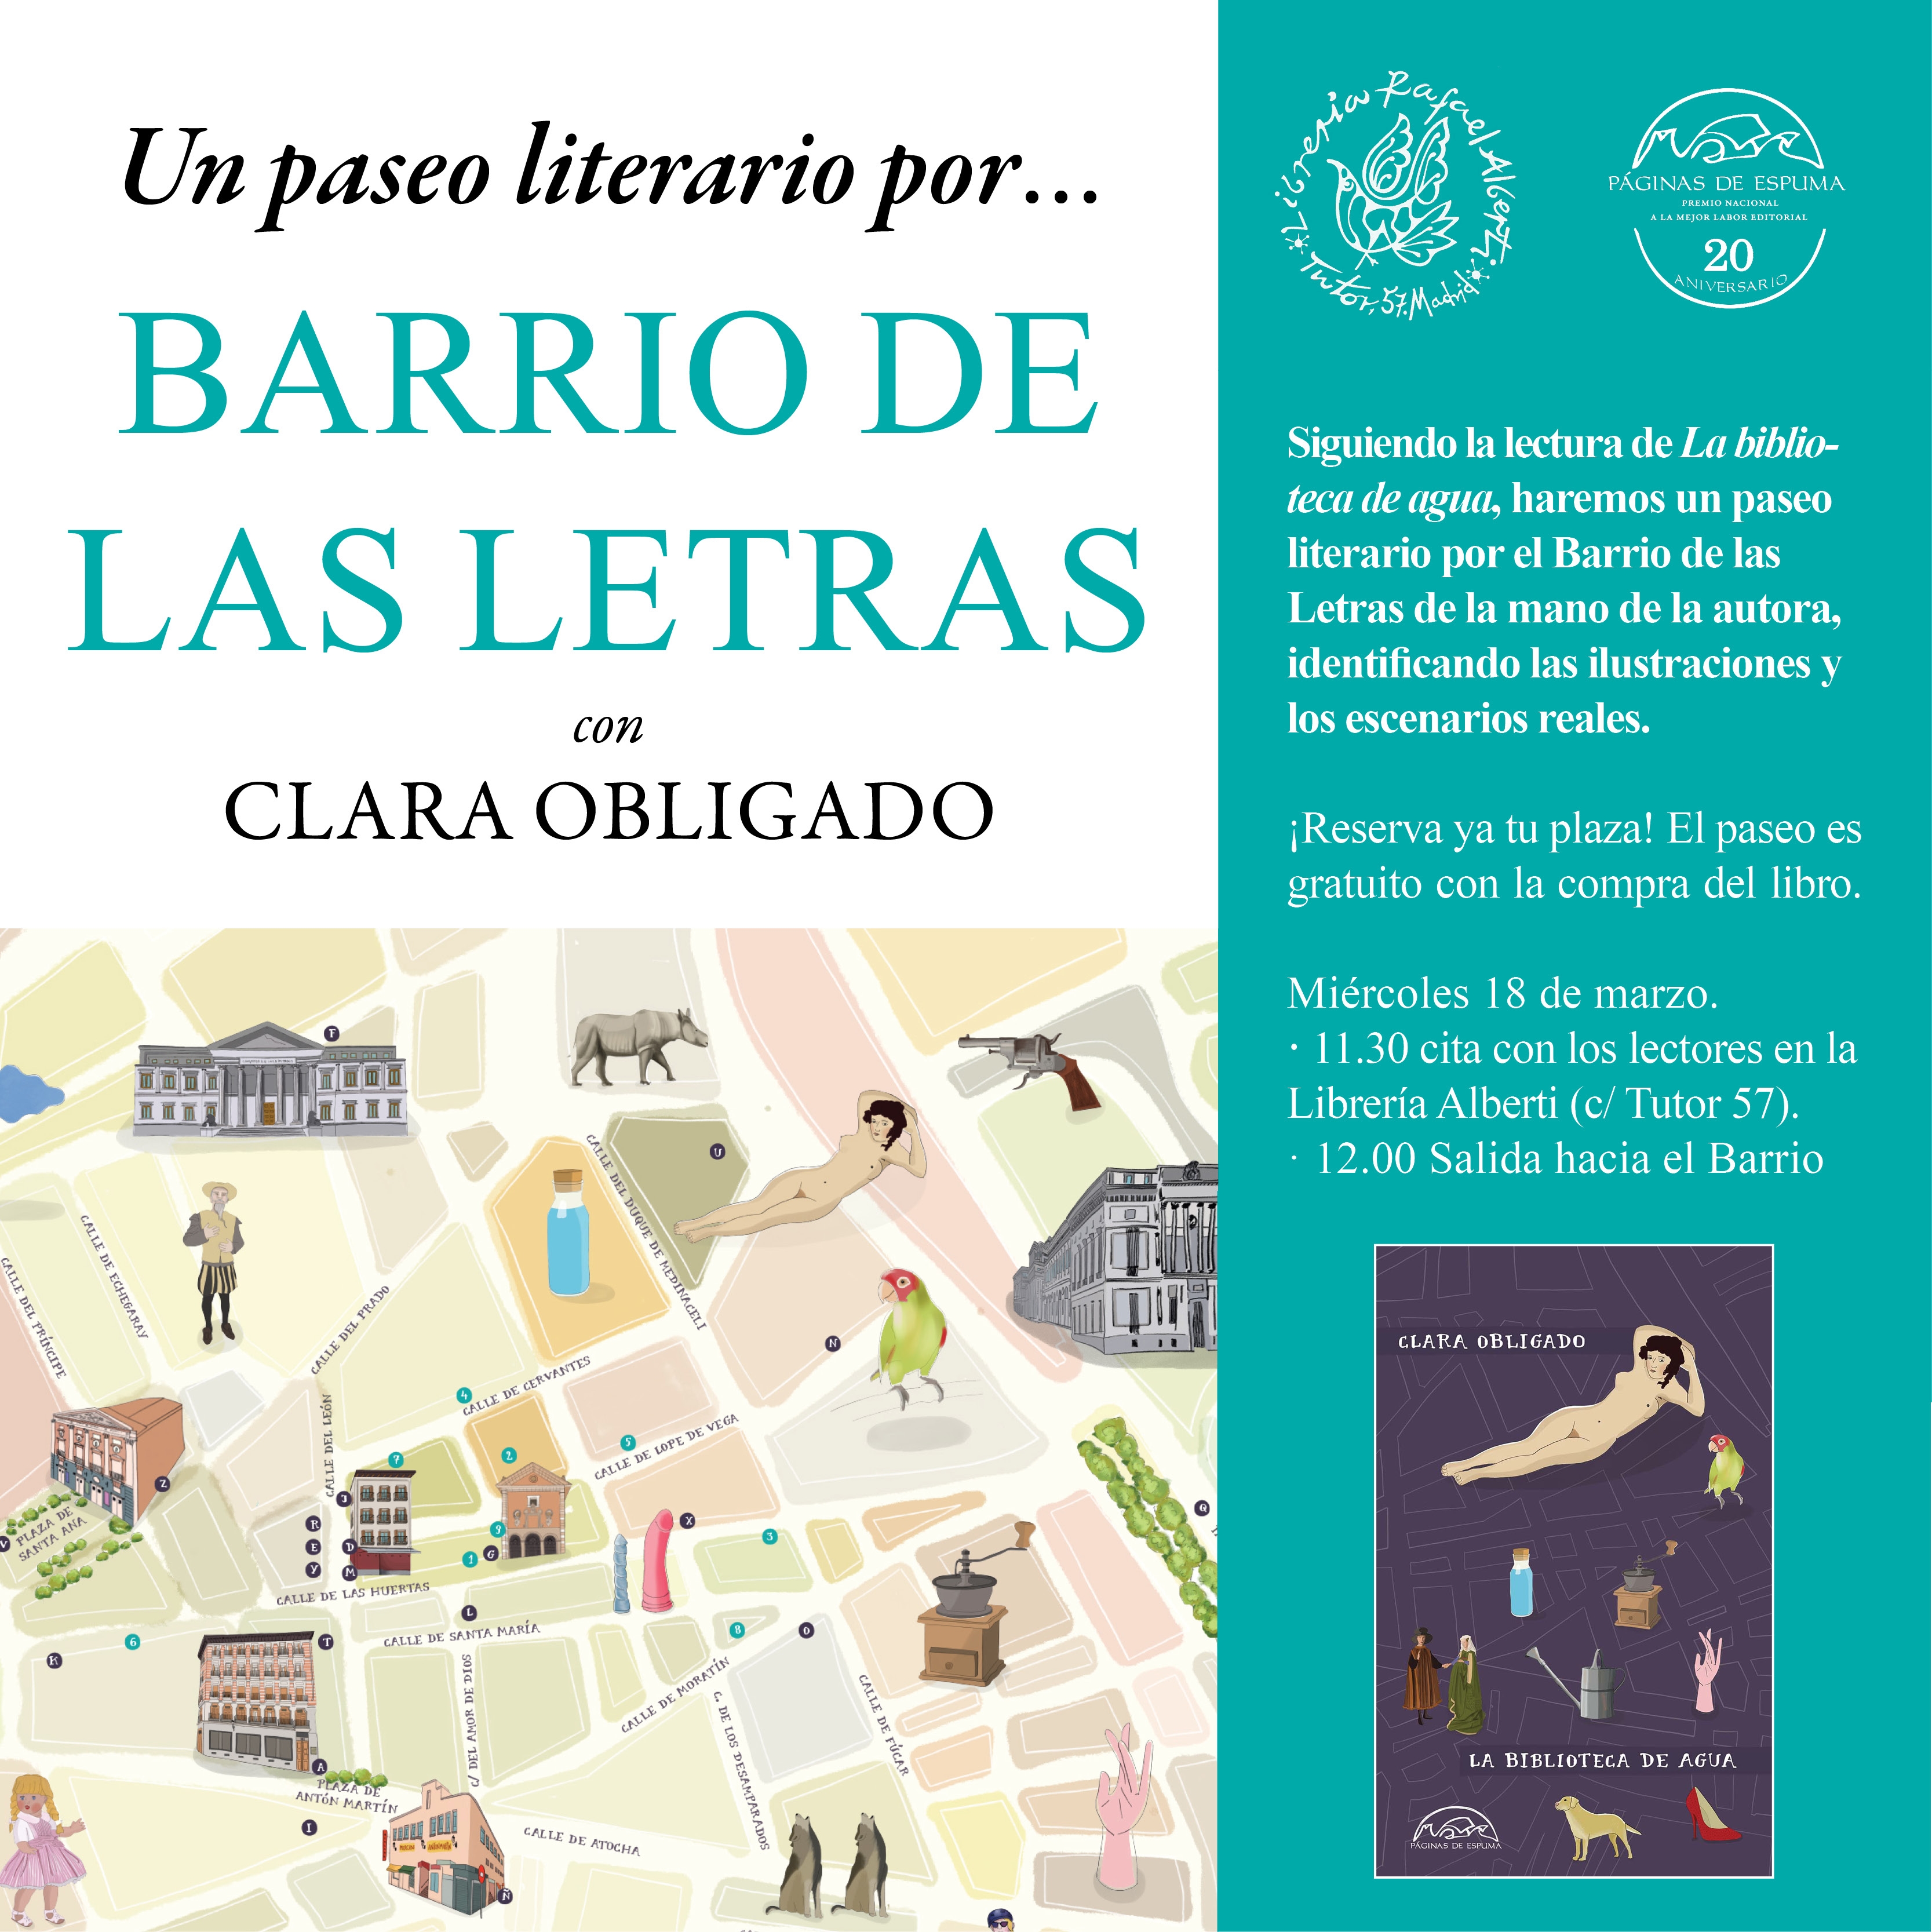 Paseo literario por el Barrio de las Letras con CLARA OBLIGADO